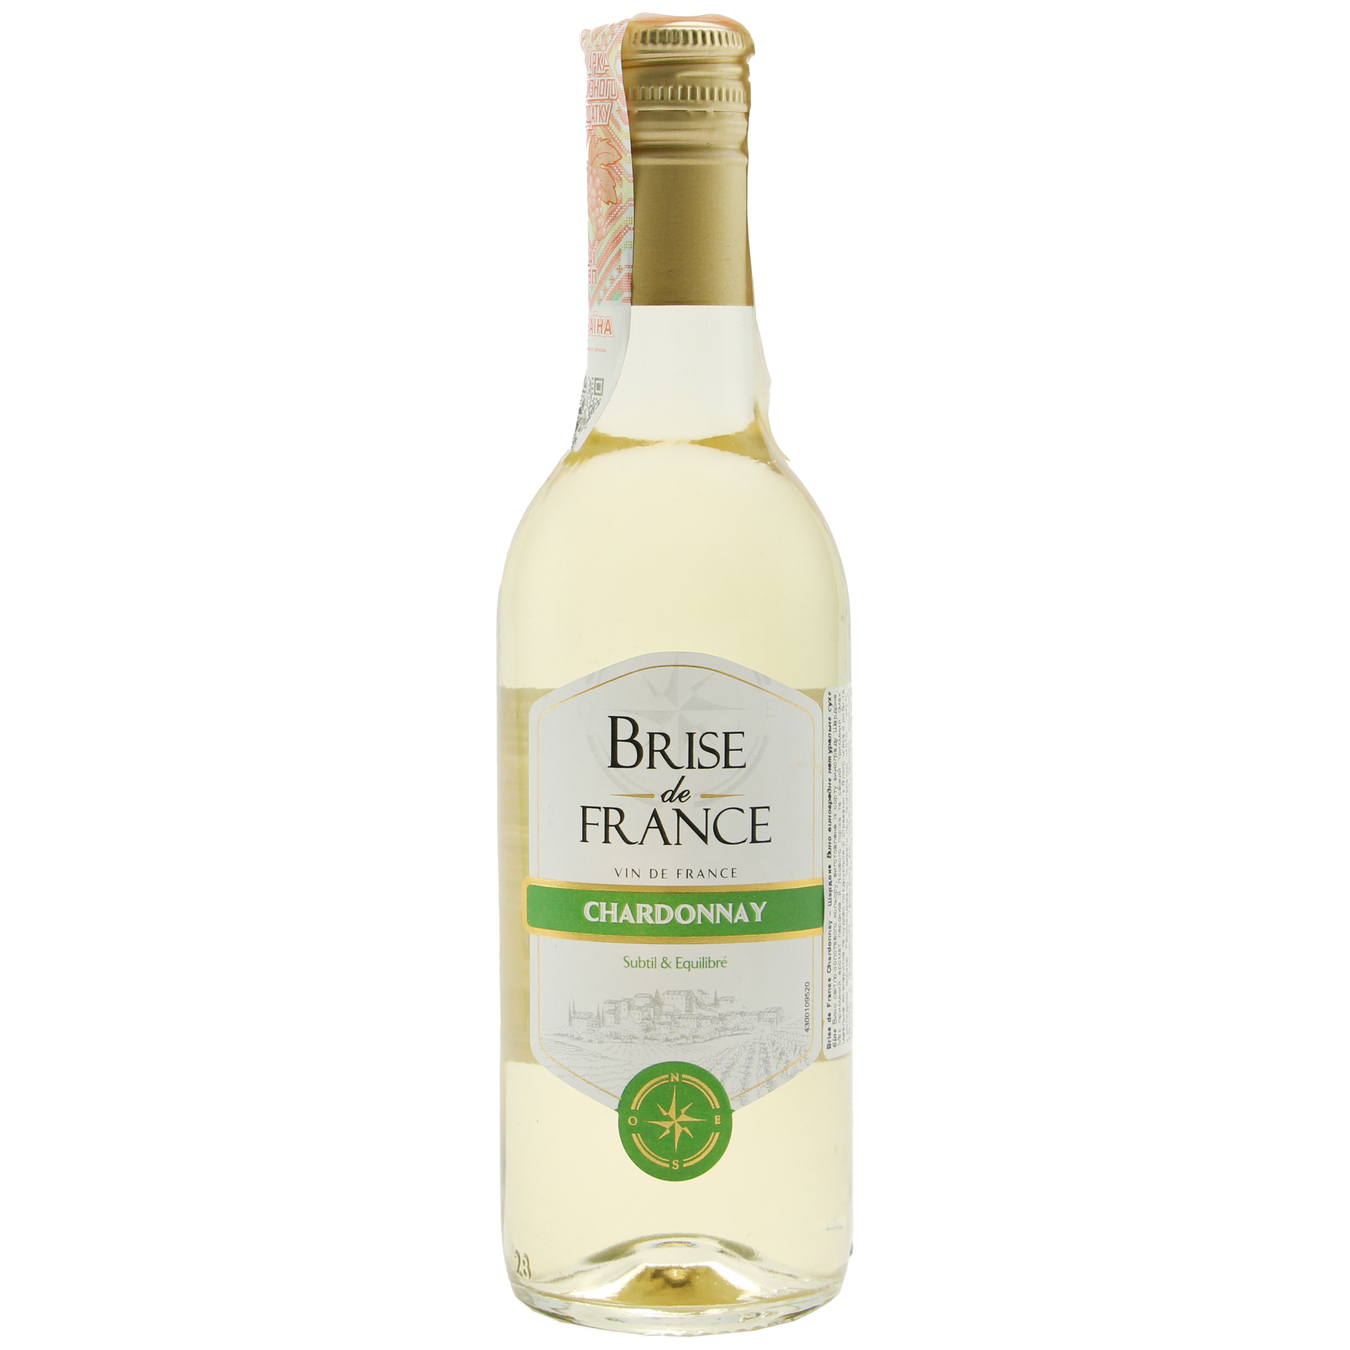 Brise de France Chardonnay white dry wine 12,5% 0,25l